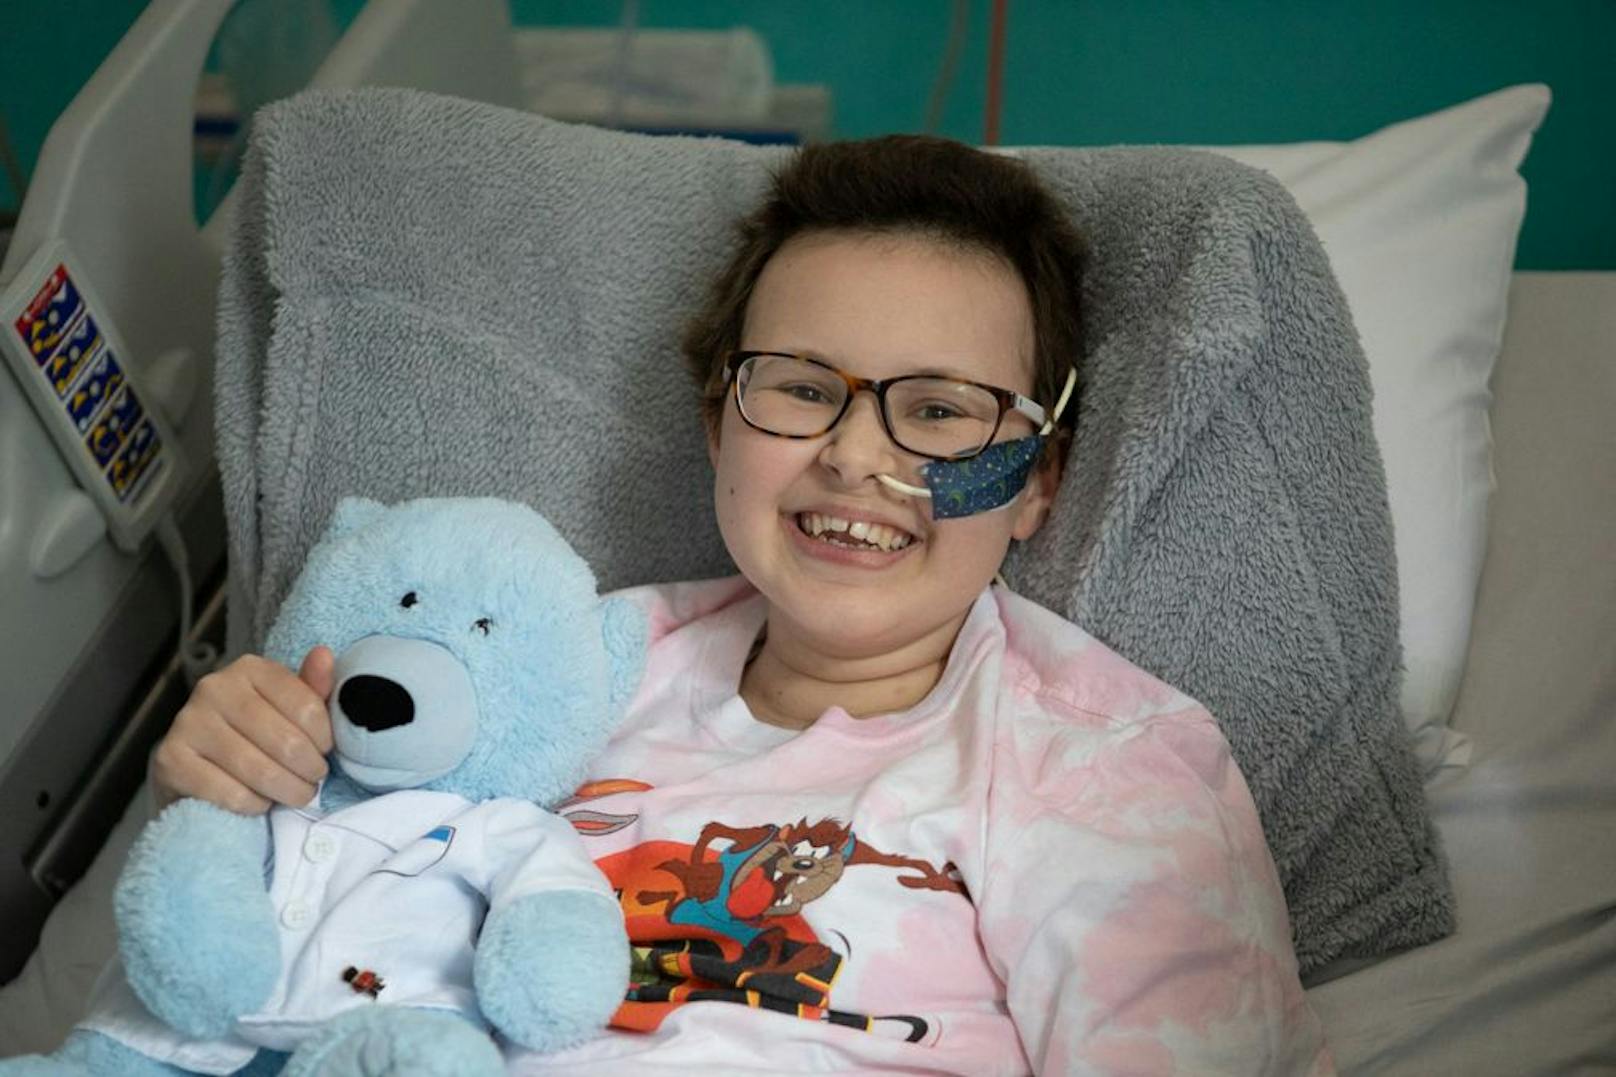 Die Erleichterung und Freude sind der 13-jährigen Alyssa anzusehen. Die Britin hat ihren zunächst als unbesiegbar geltenden Blutkrebs besiegt – mit der Hilfe einer völlig neuartigen Gentherapie.